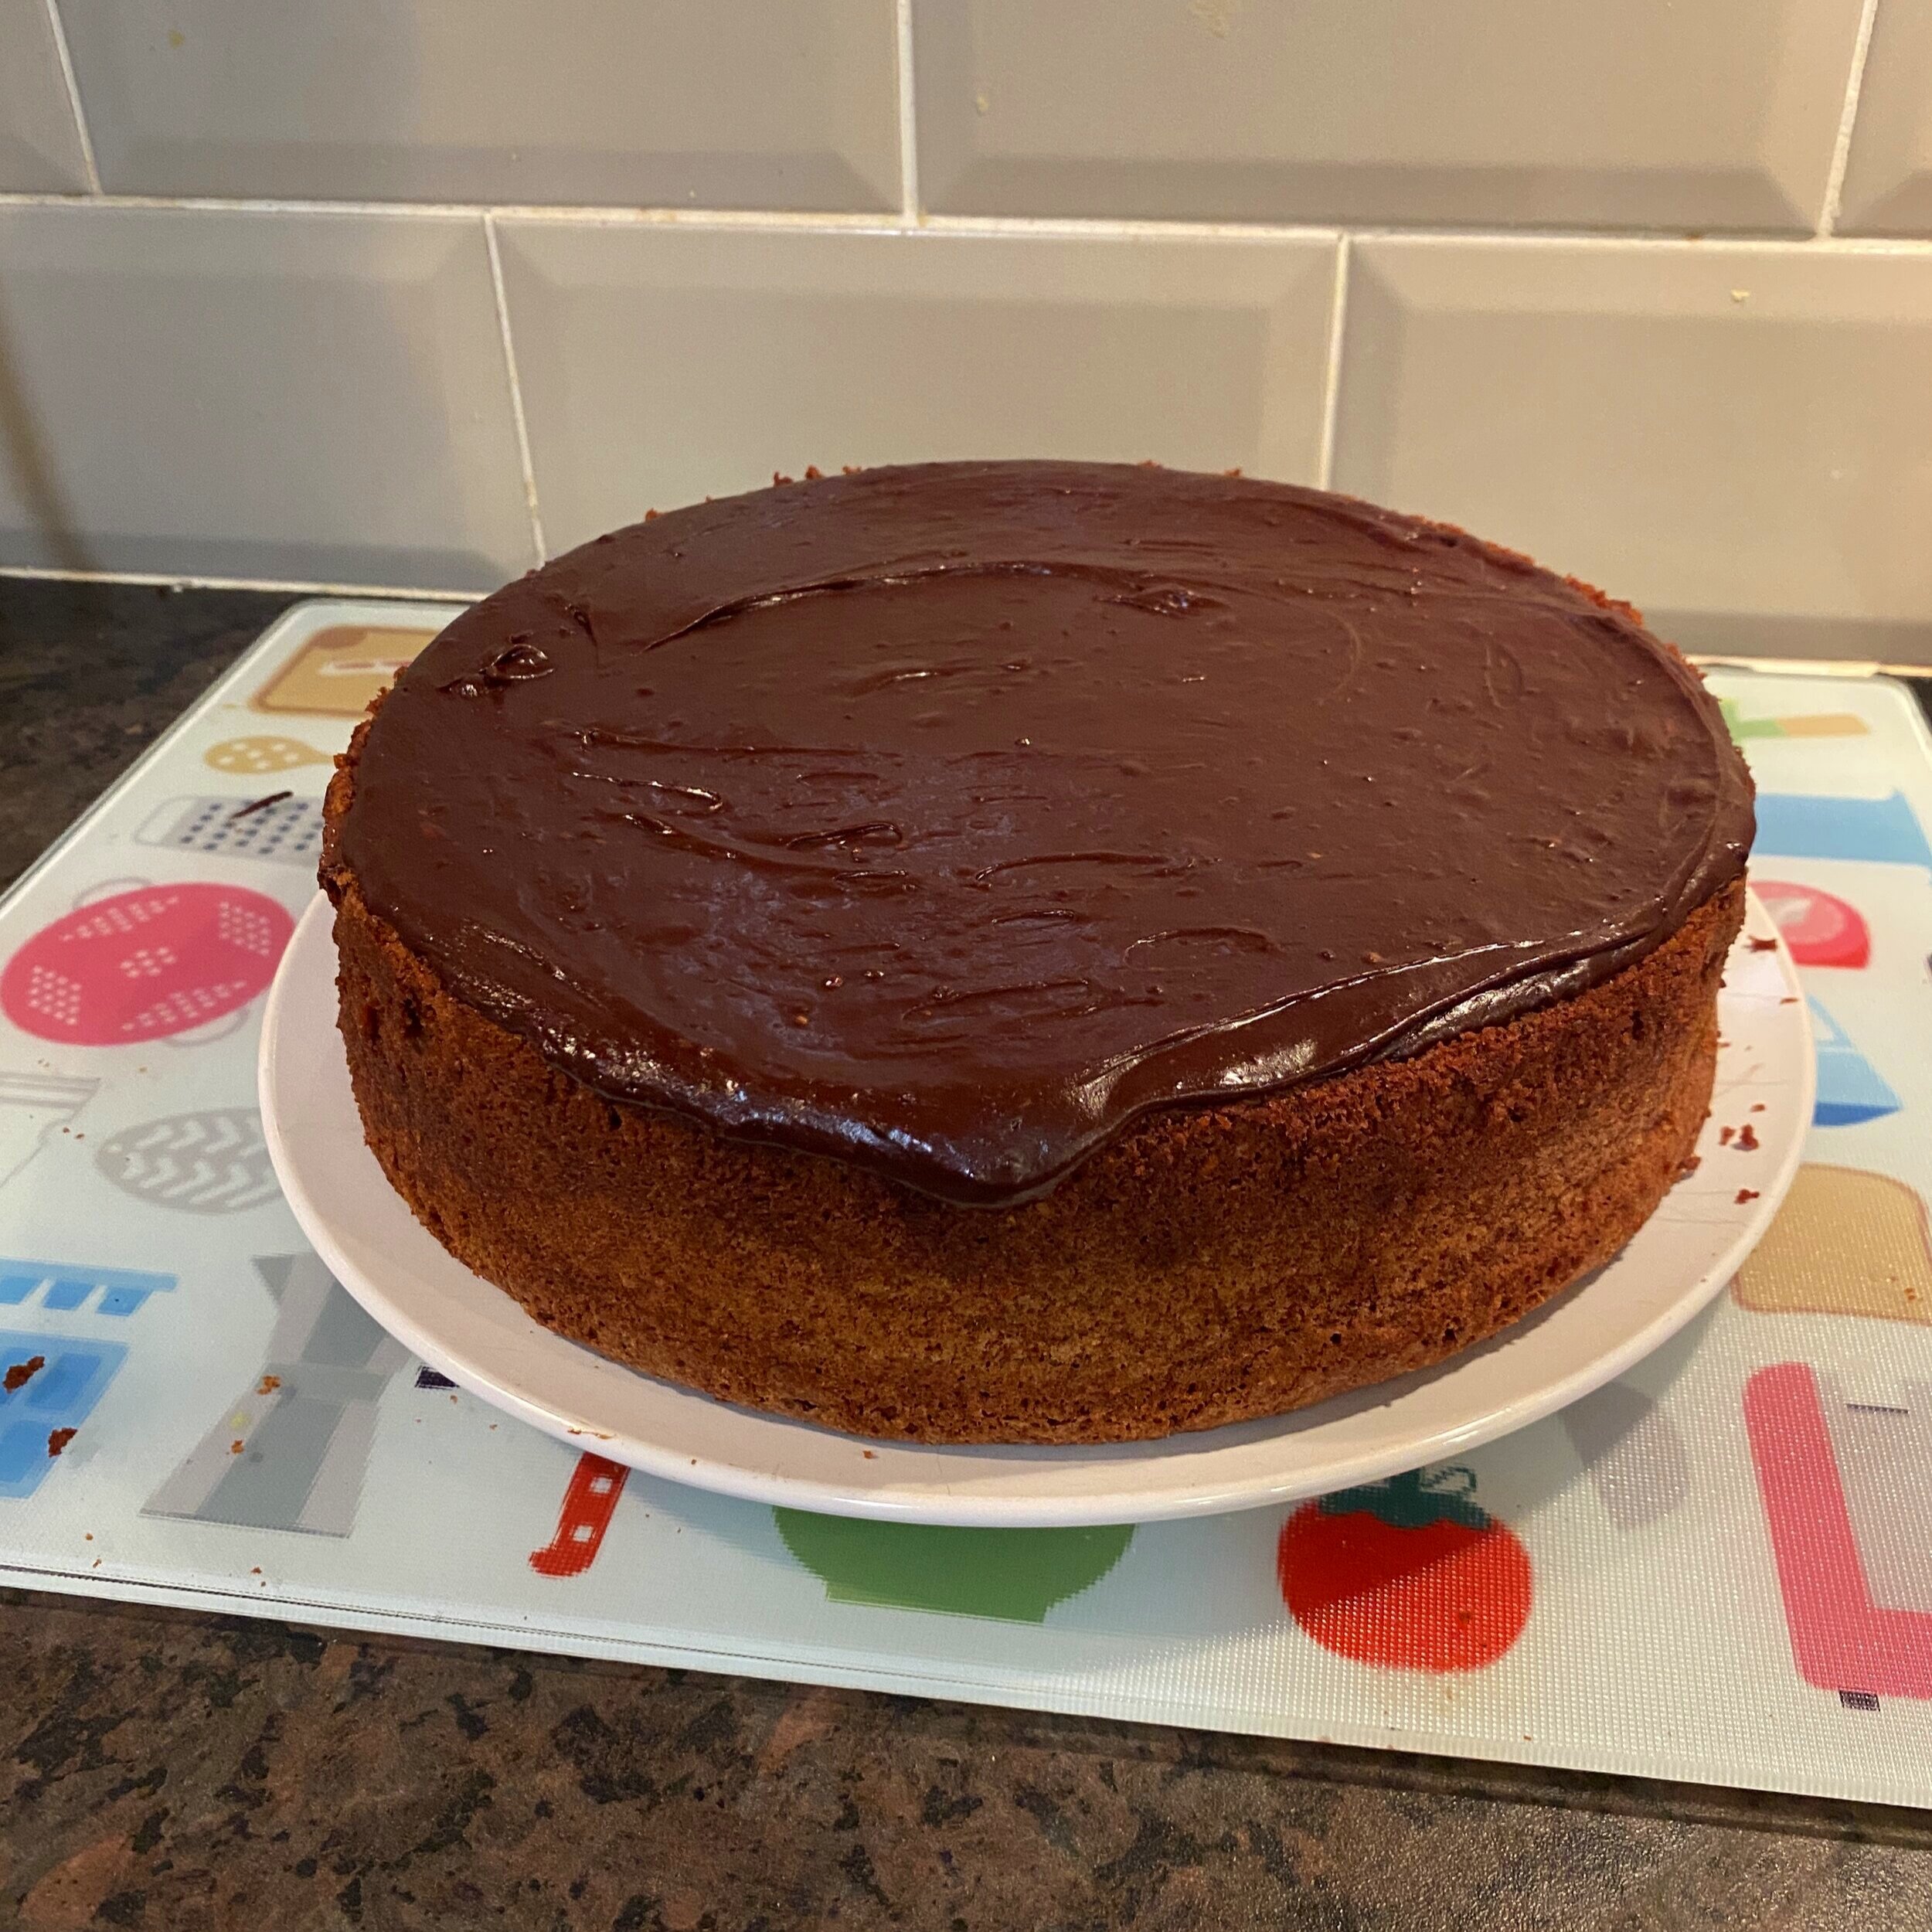 Week 47: Rachel Allen's Chocolate Fudge Cake